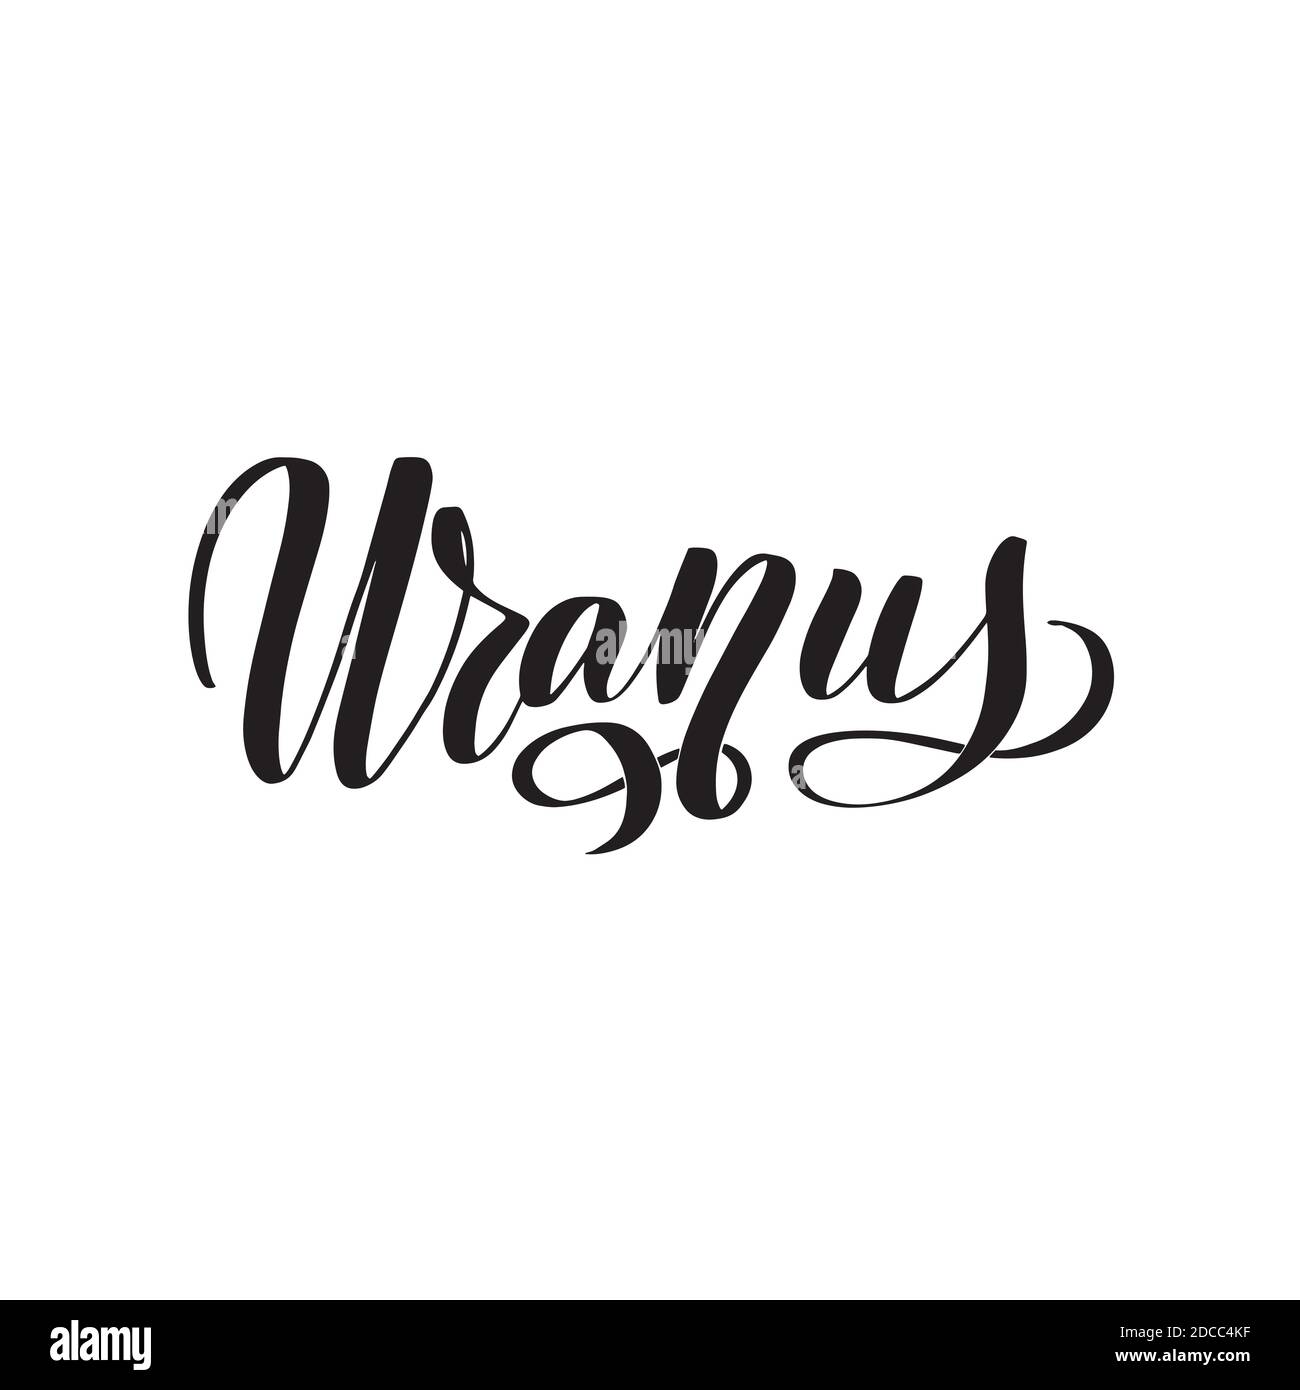 Uranus. Hand written Inspirational lettering isolated on white background. Stock Vector